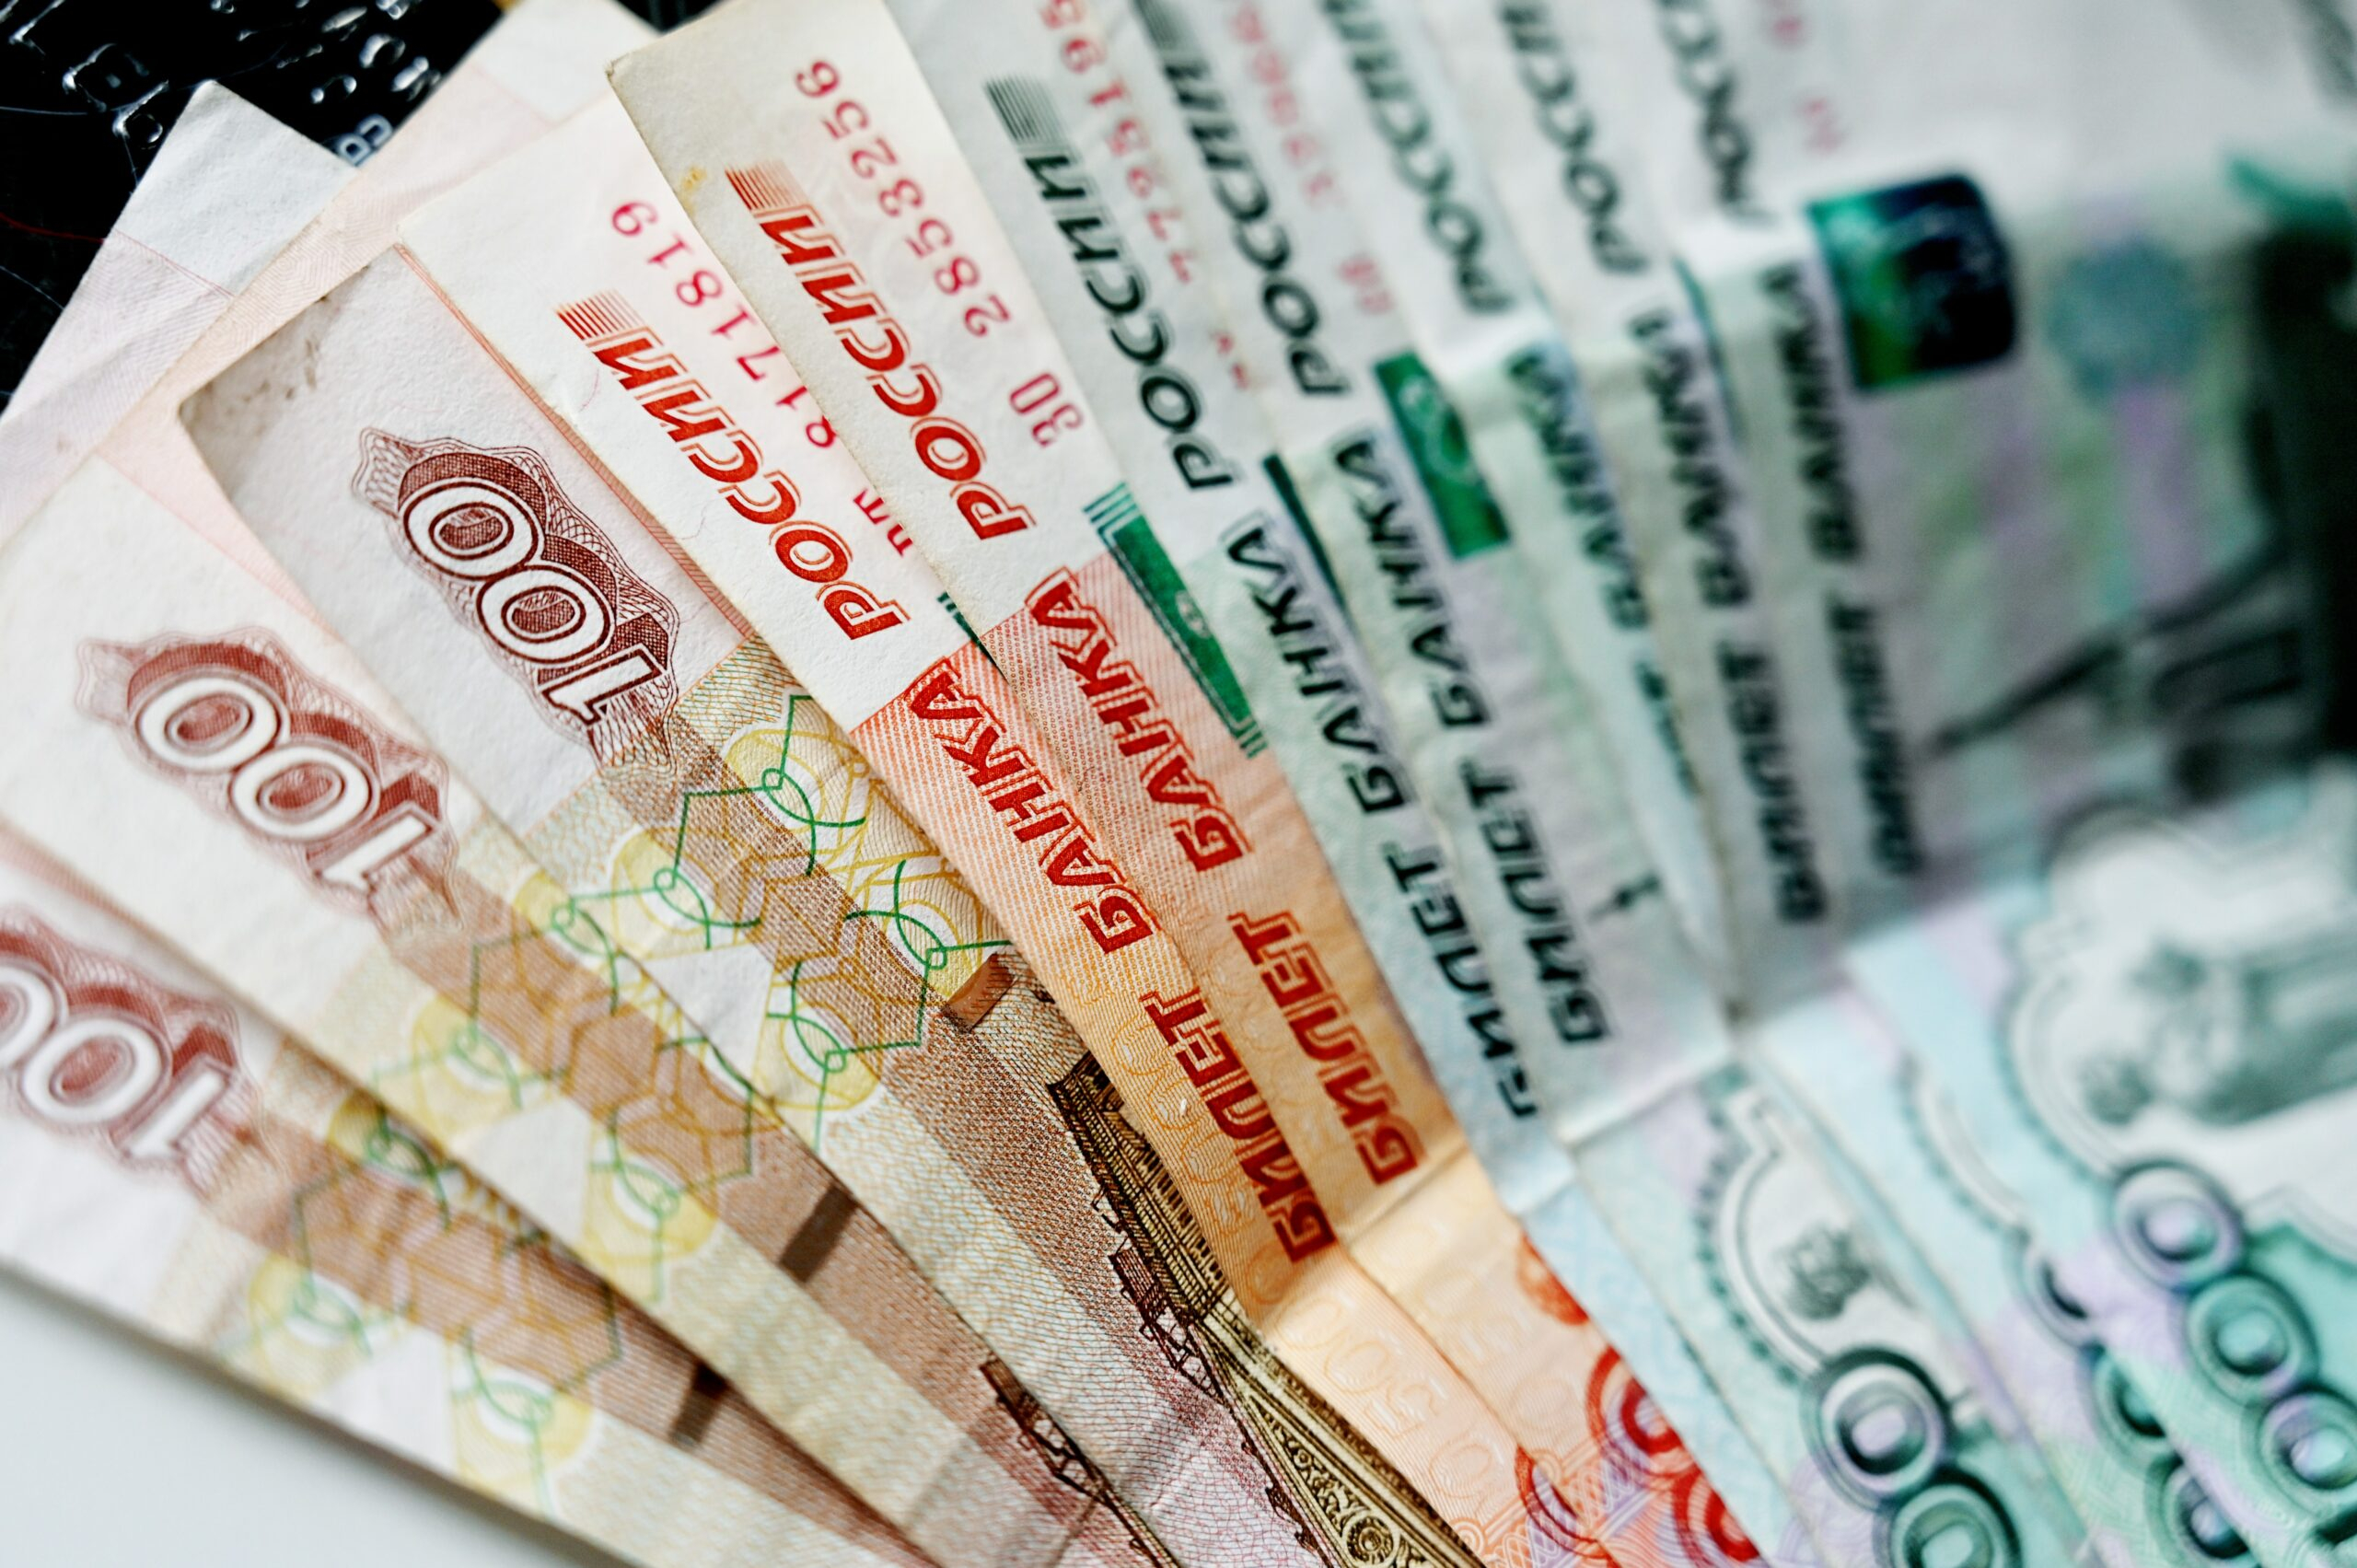 Большинство россиян не доверяют иностранным валютам — опрос ВЦИОМ